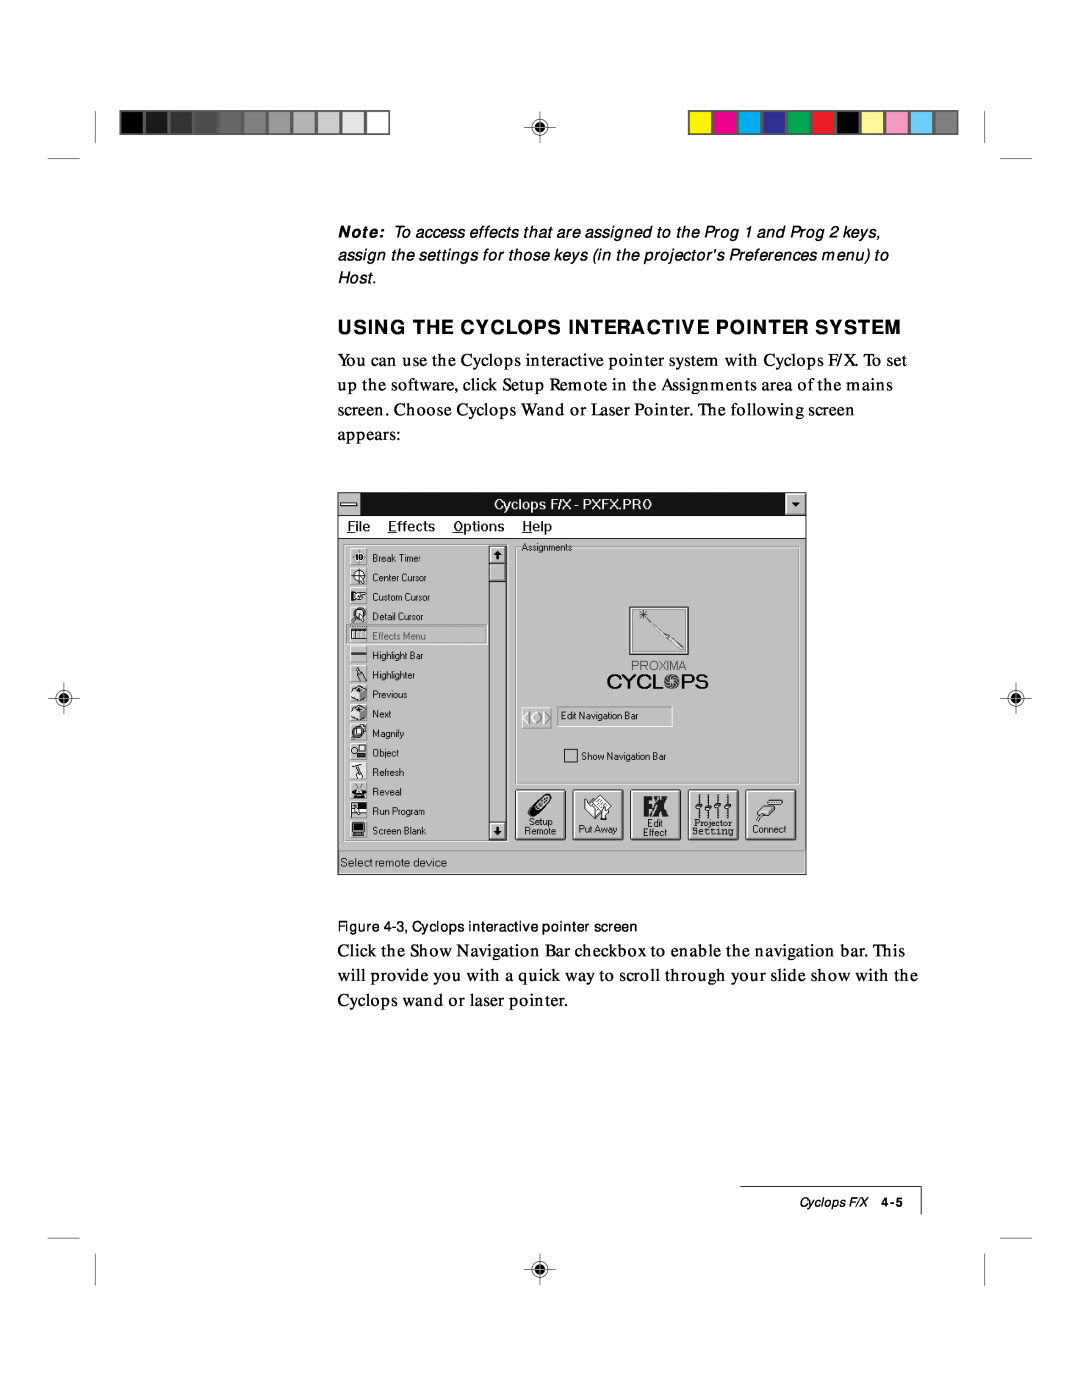 Ask Proxima 9100 manual Using The Cyclops Interactive Pointer System, 3, Cyclops interactive pointer screen 